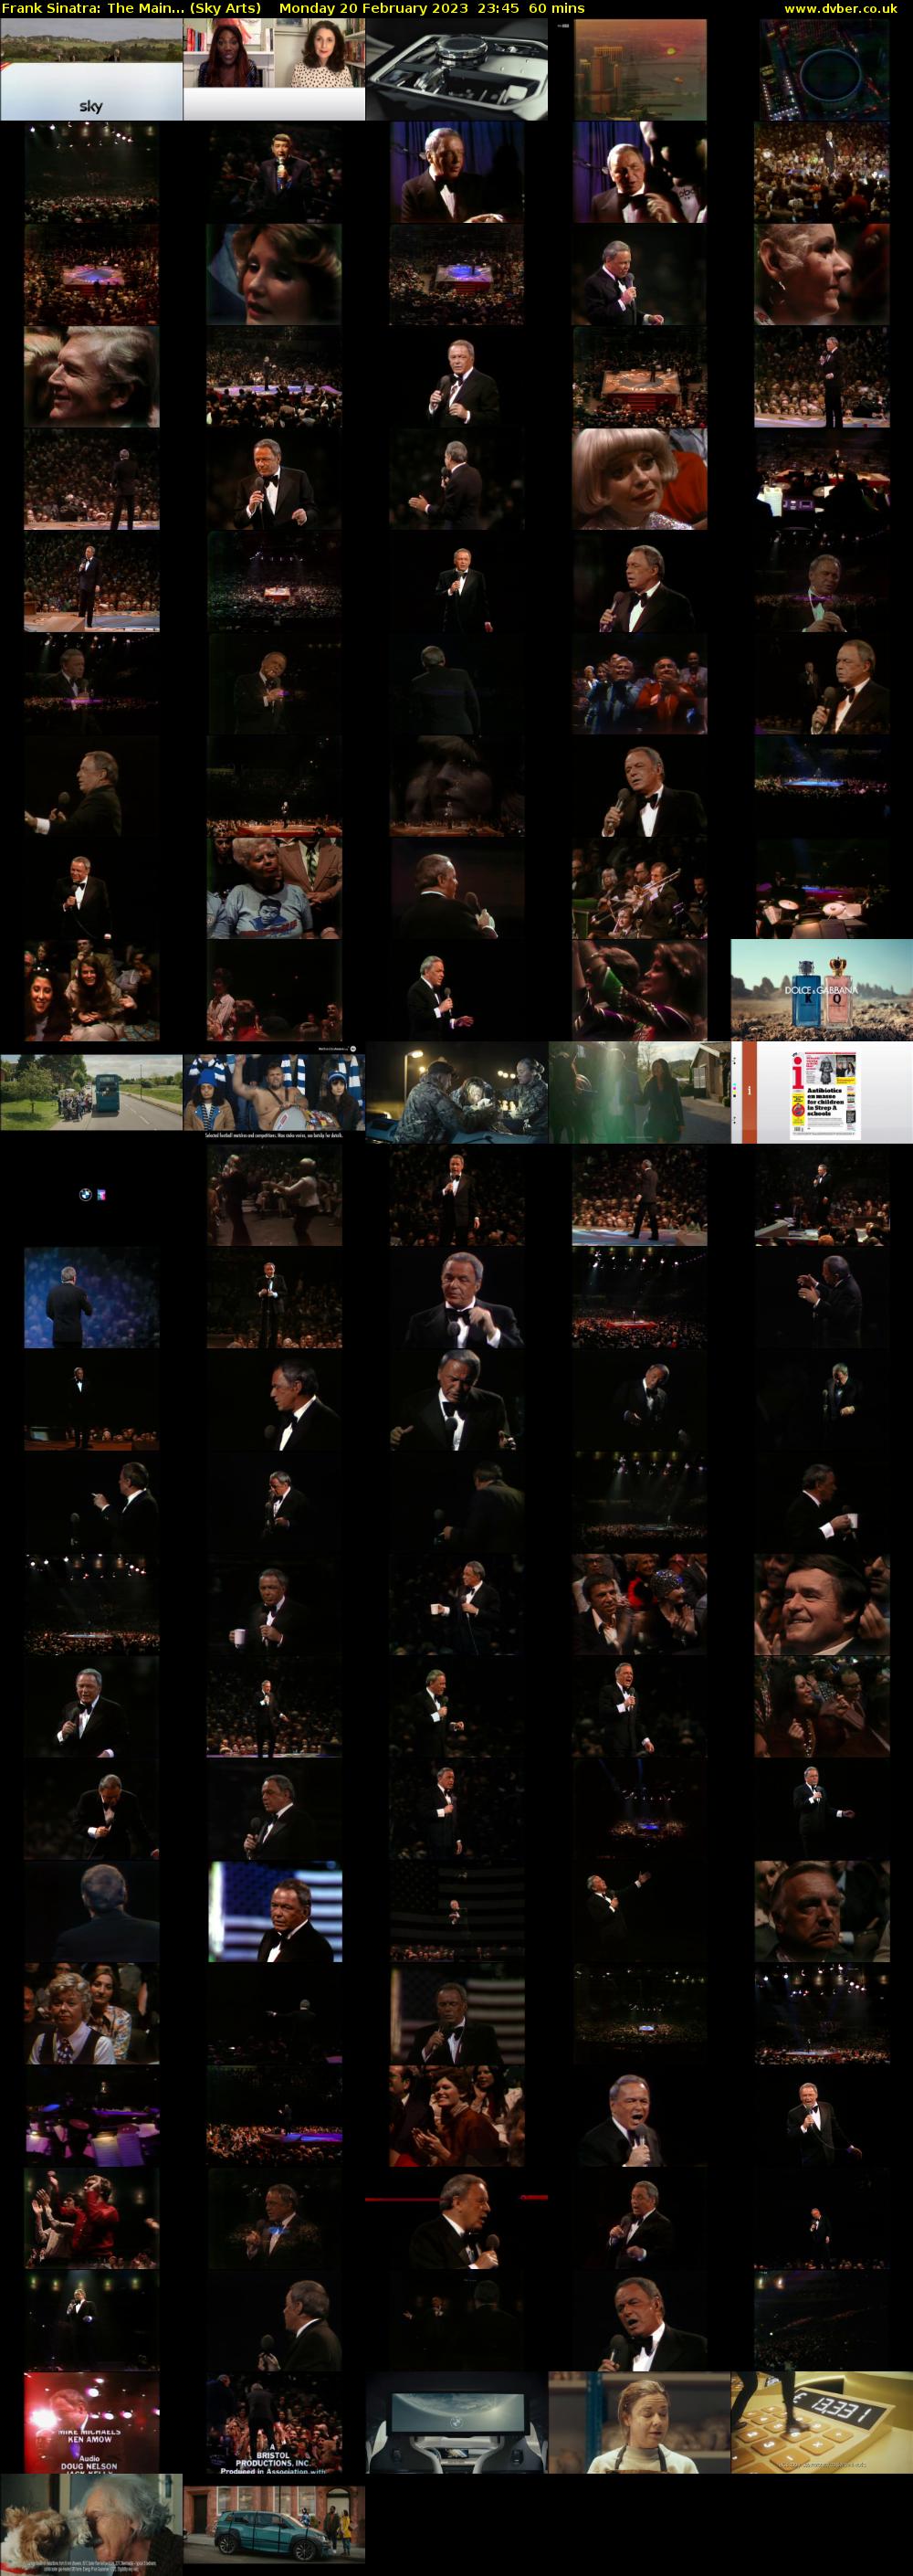 Frank Sinatra: The Main... (Sky Arts) Monday 20 February 2023 23:45 - 00:45